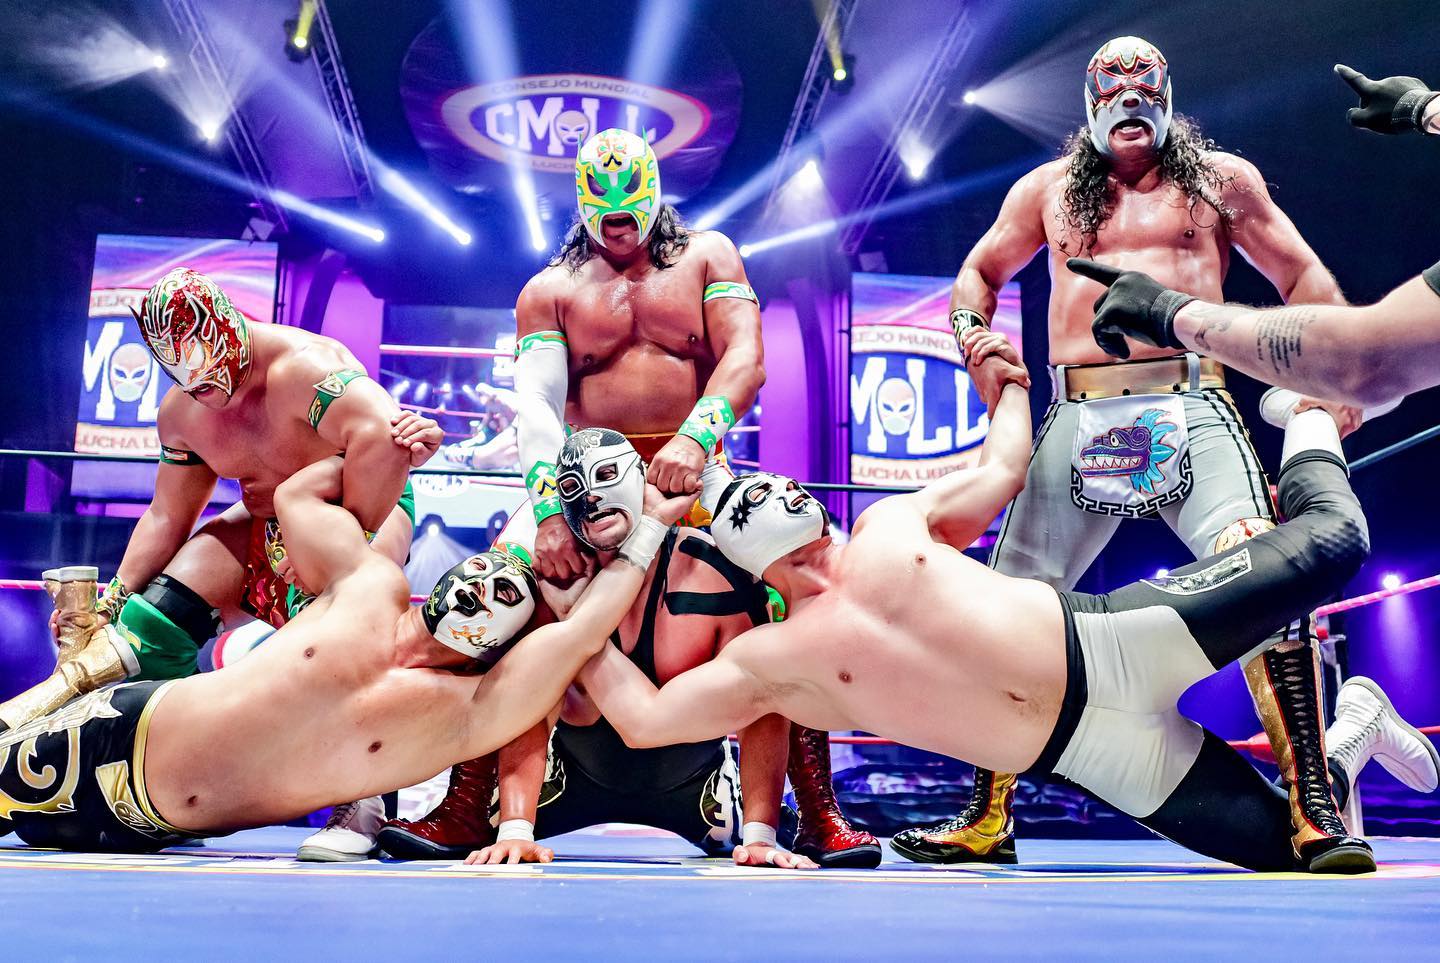 La lucha libre en México es uno de los deportes más practicados, vistos y tradicionales. (Foto: @CMLL Consejo Mundial de Lucha Libre Oficial/Facebook)